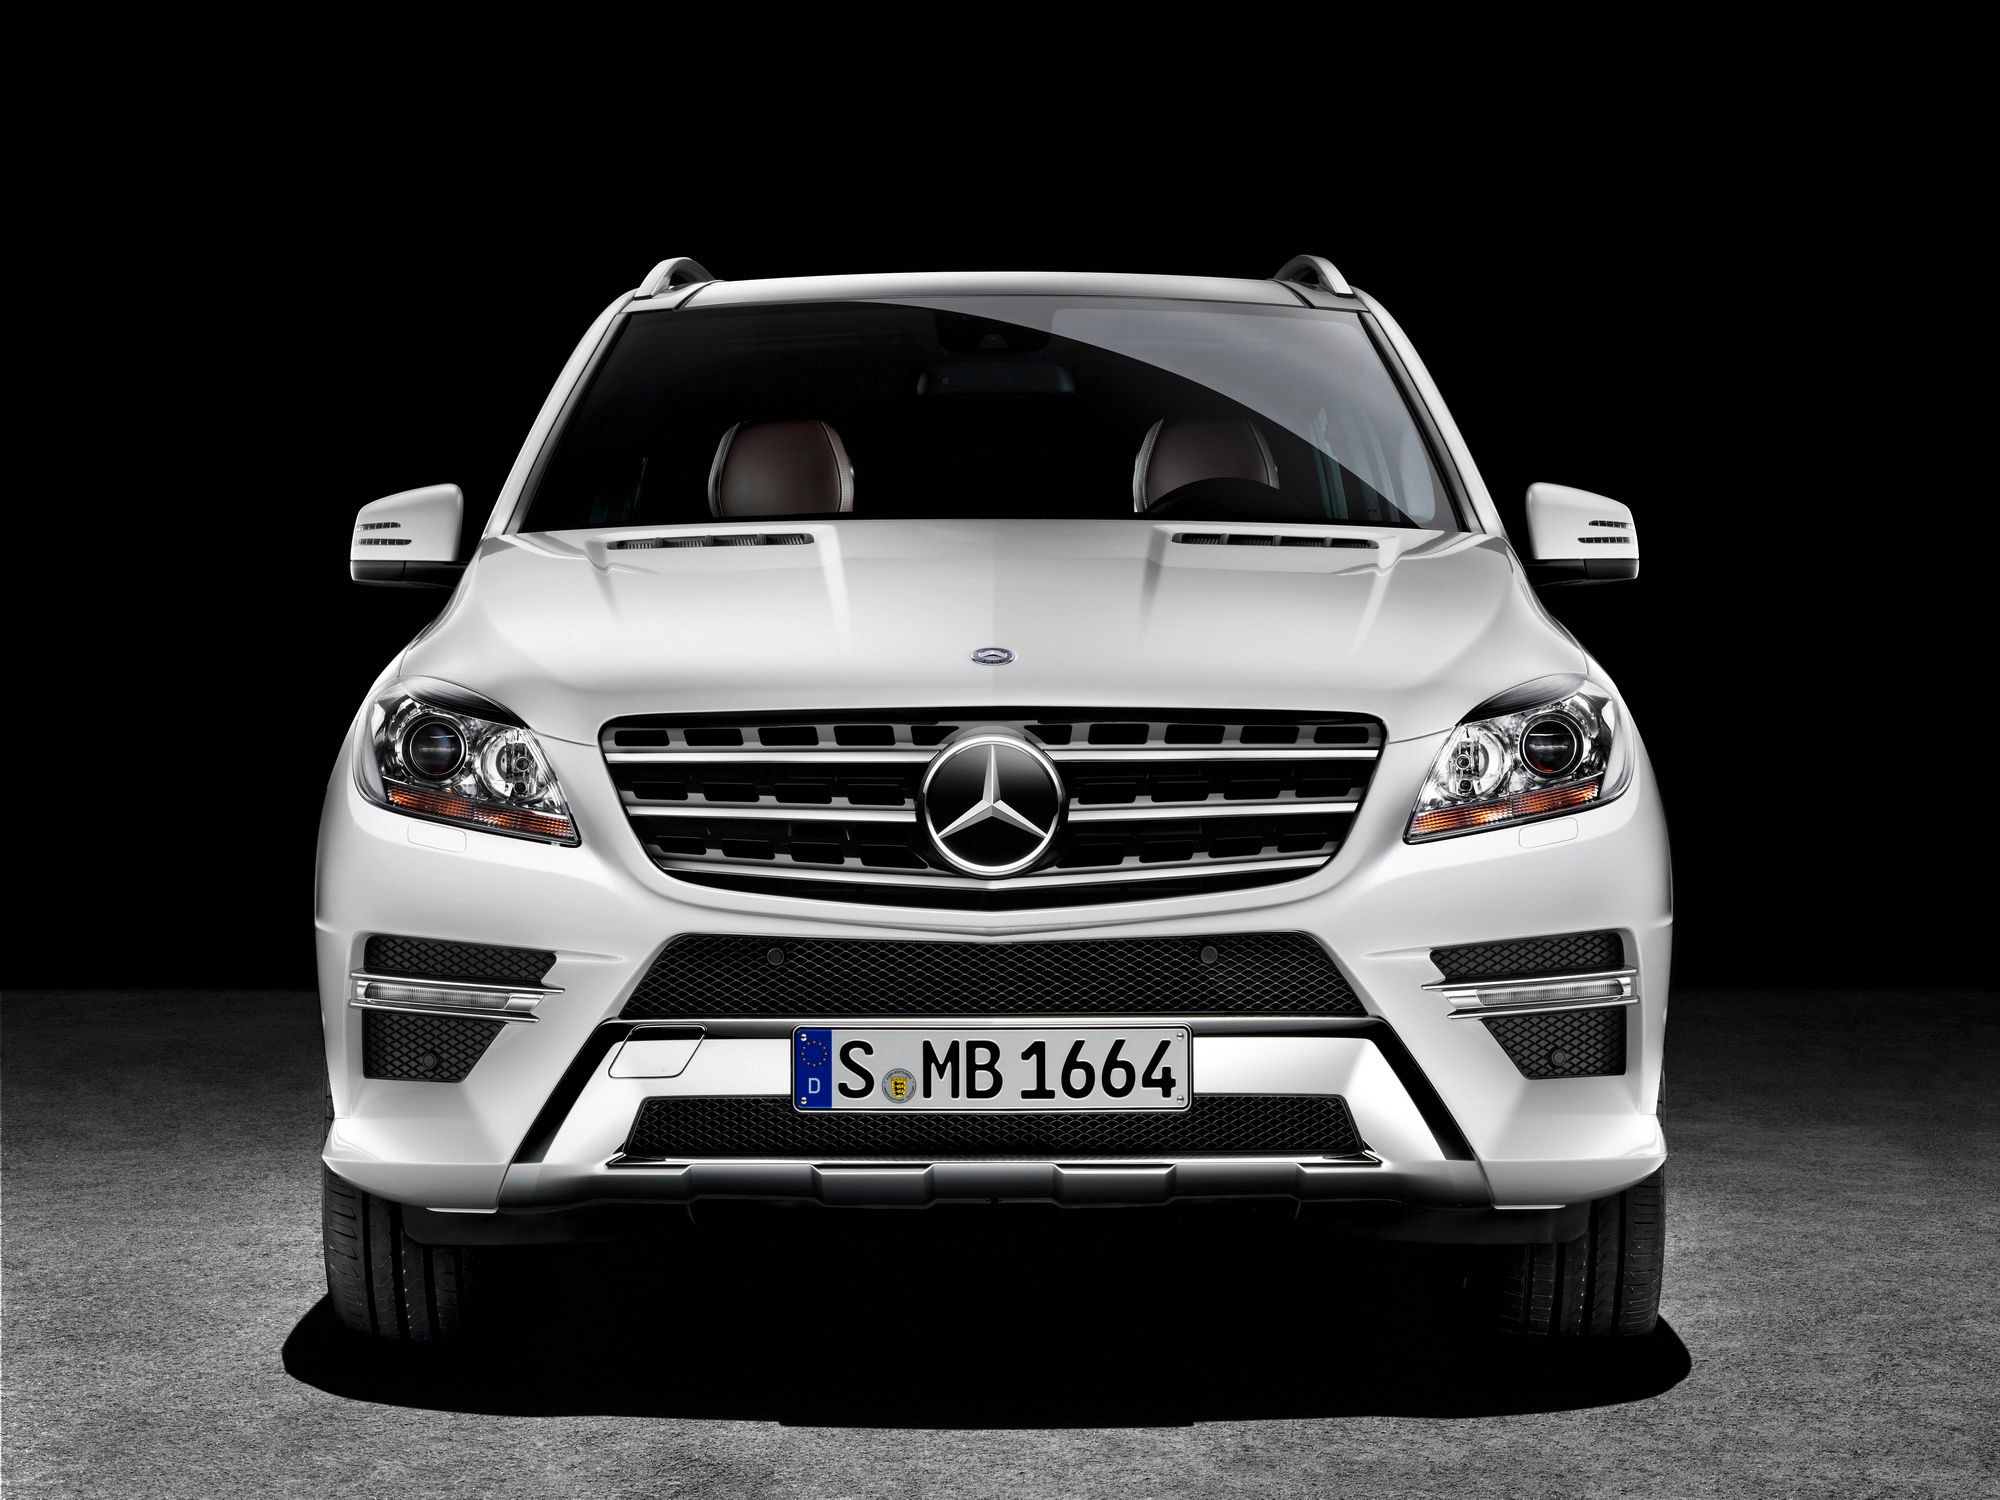 2012 - 2013 Mercedes-Benz ML-Class